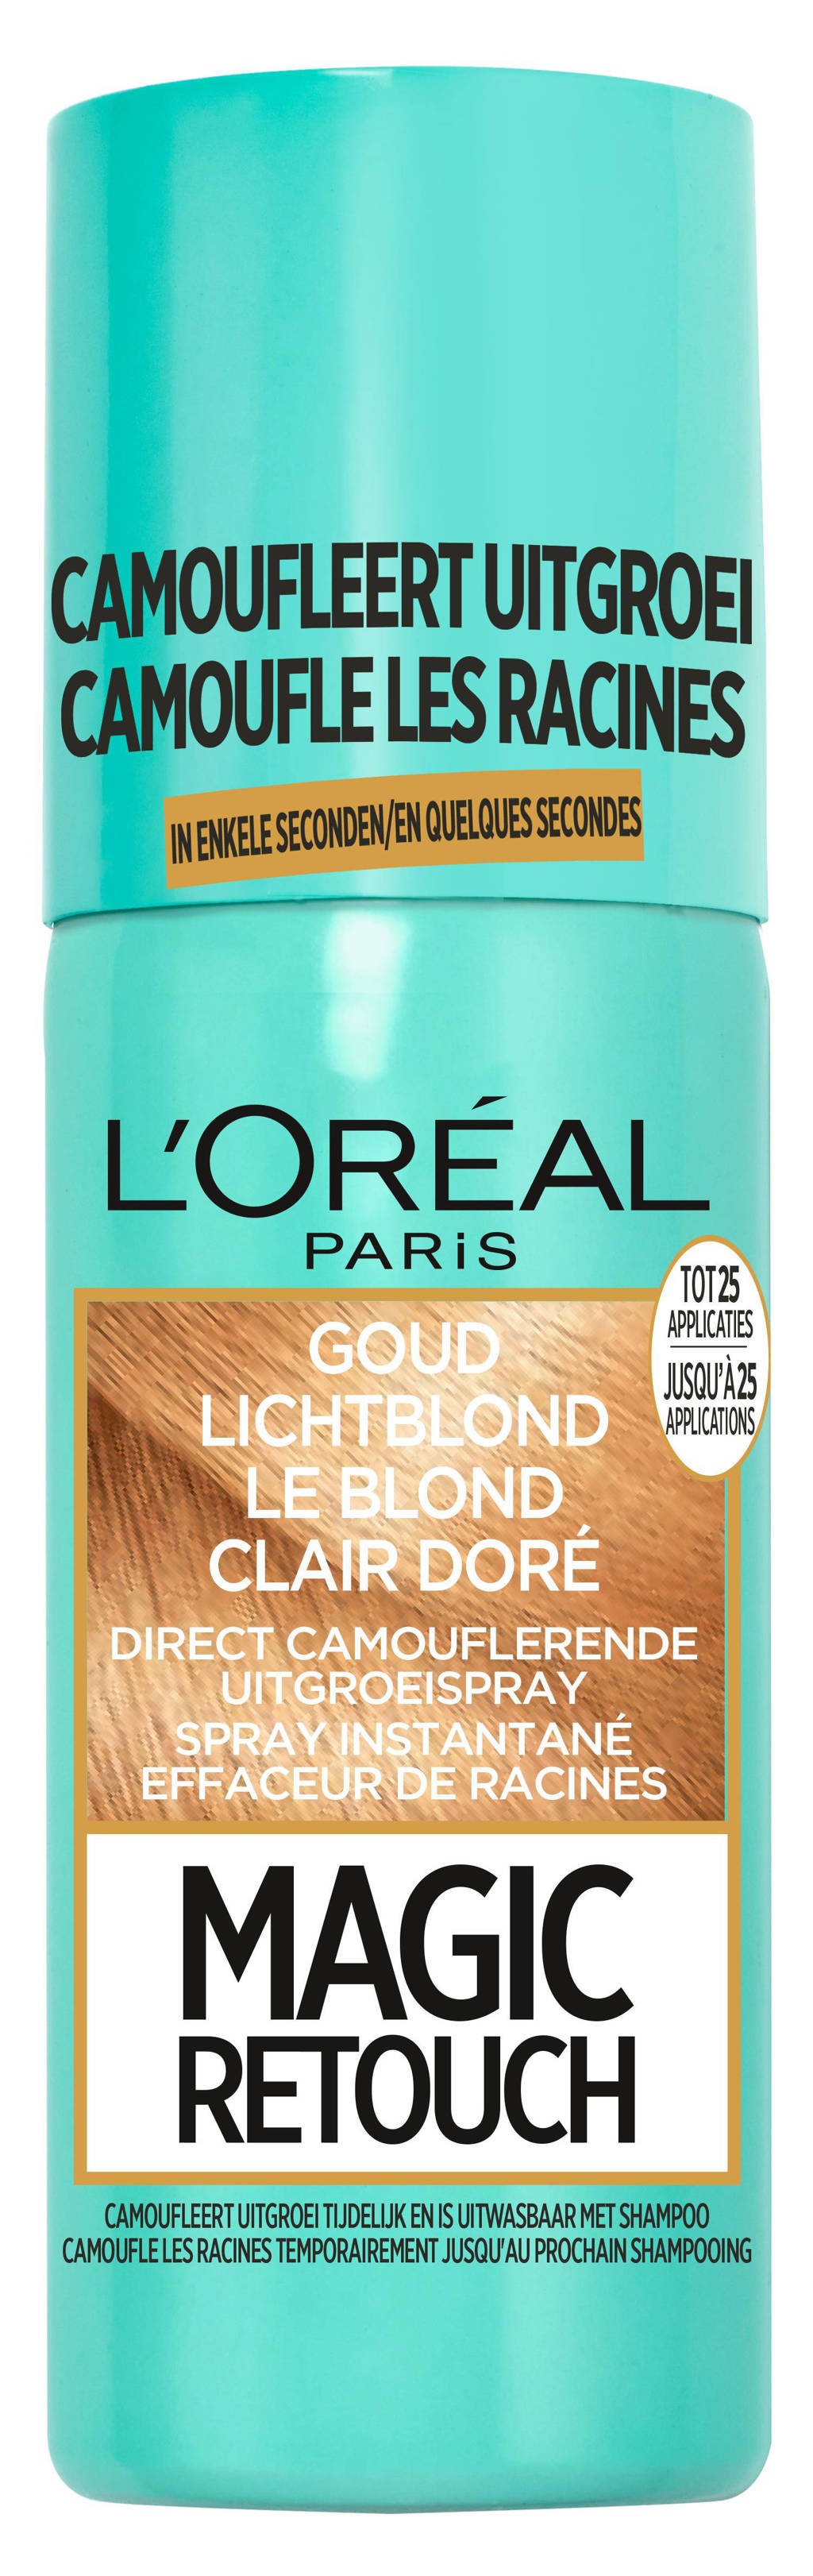 L'Oréal Paris Coloration Magic Retouch uitgroei camoufleerspray - Goud Lichtblond